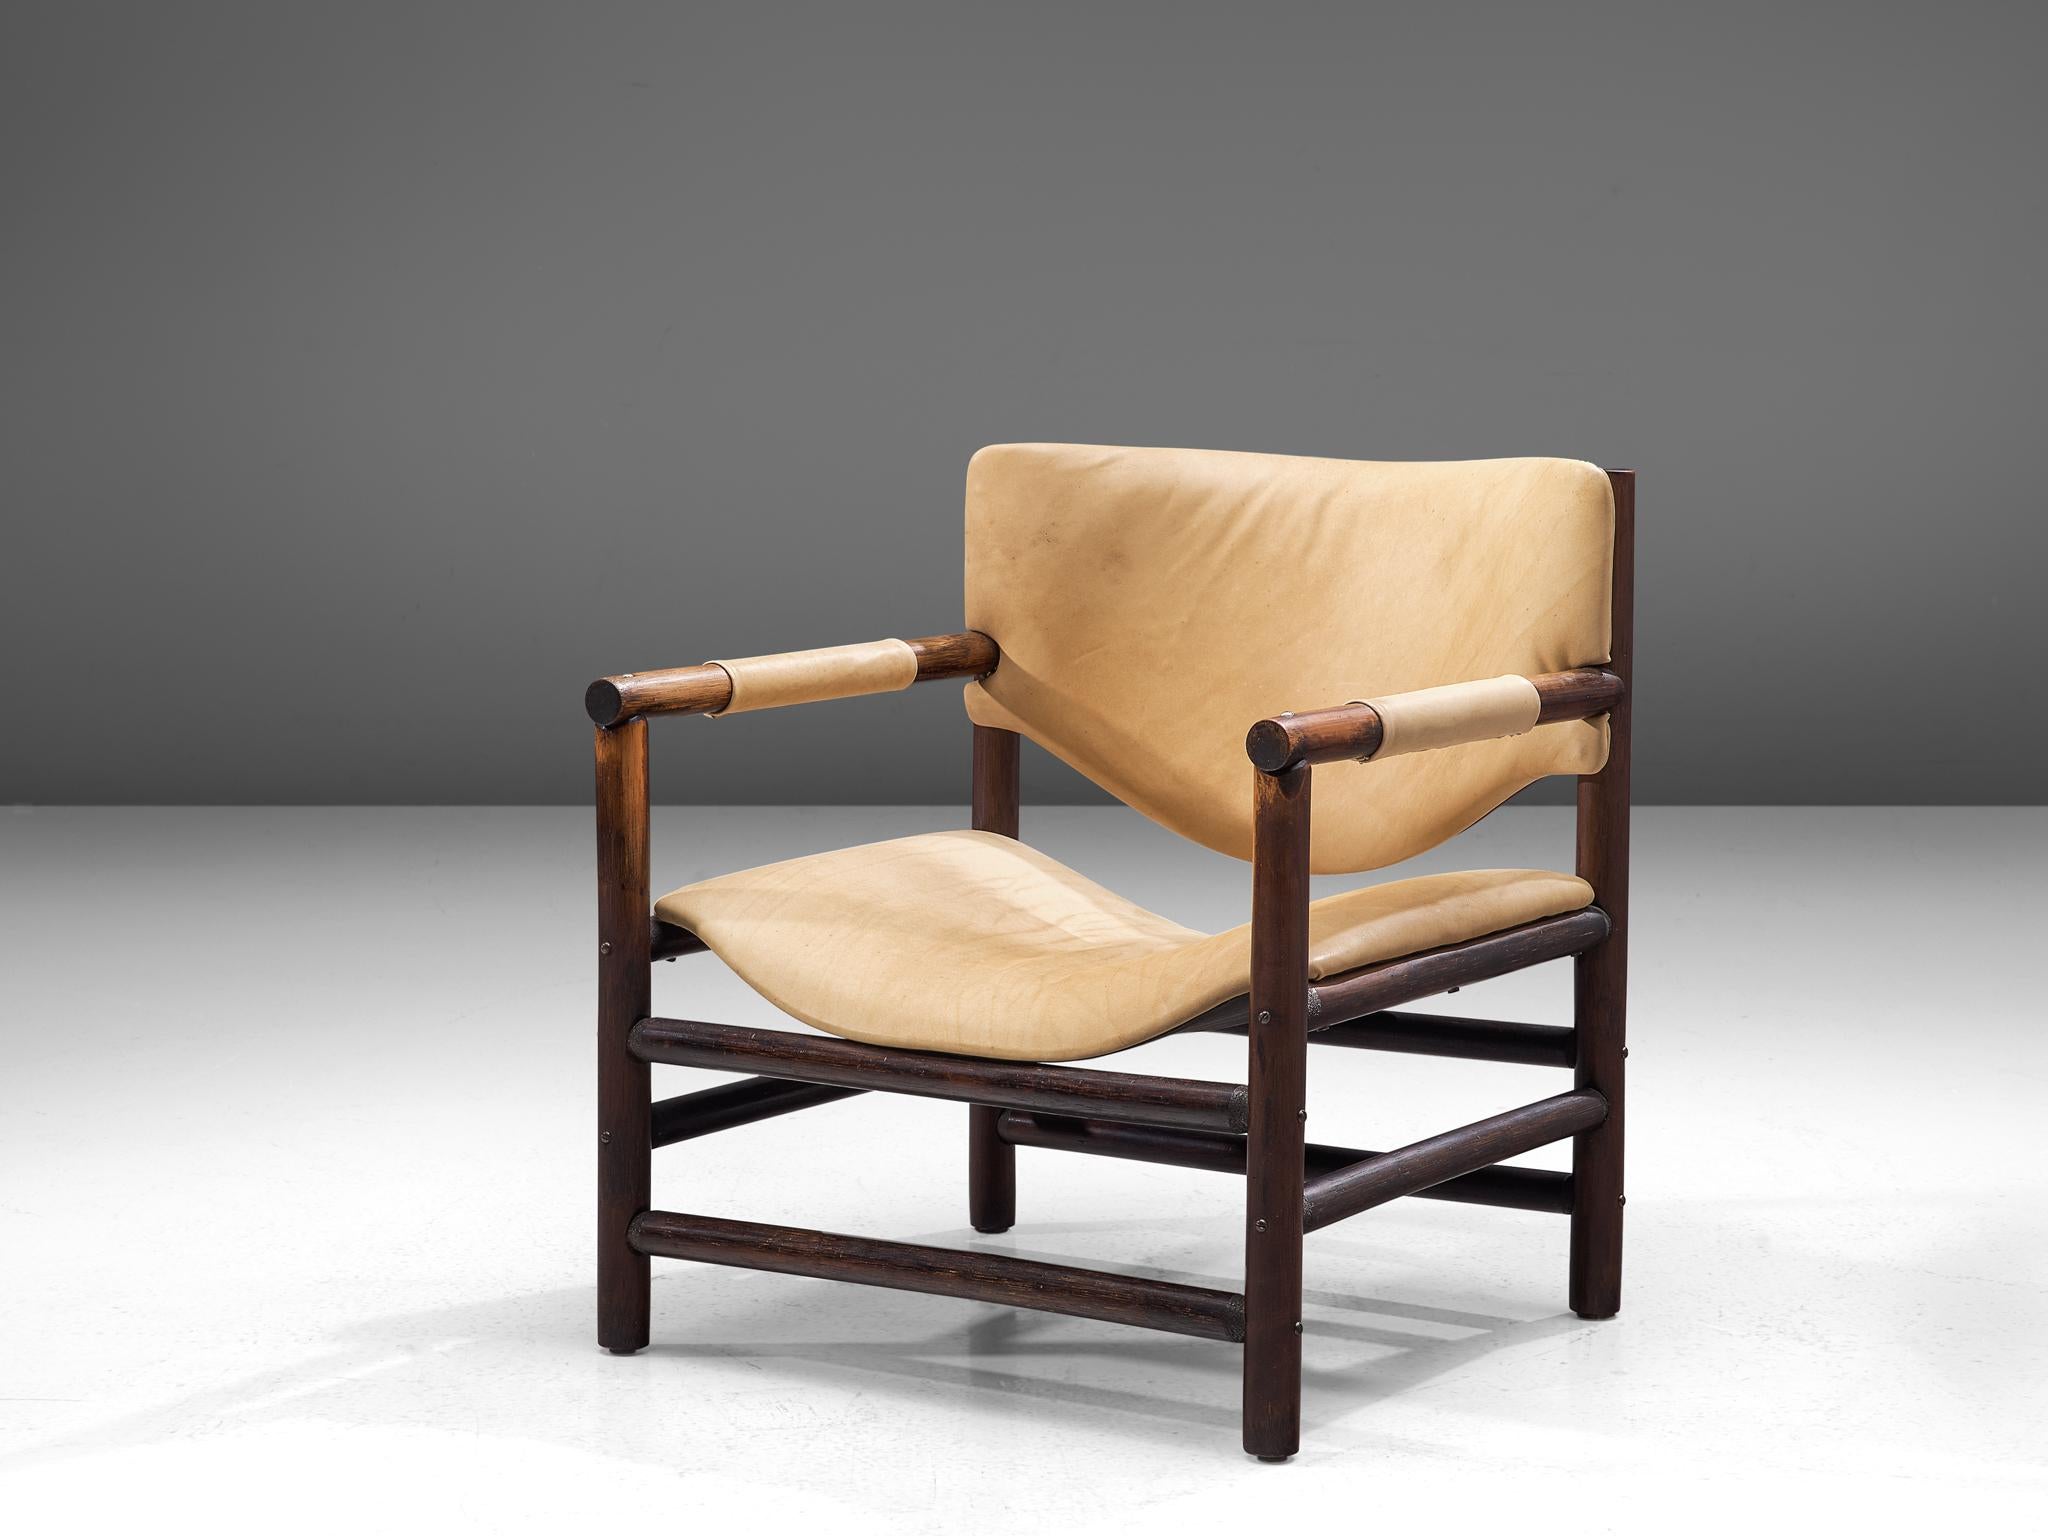 Fauteuil, cuir et chêne, Scandinavie, années 1960

Un magnifique fauteuil rustique avec un cadre géométrique en bois composé de lignes horizontales et verticales fortes. L'assise et le dossier, revêtus de cuir naturel, sont de forme organique, ce